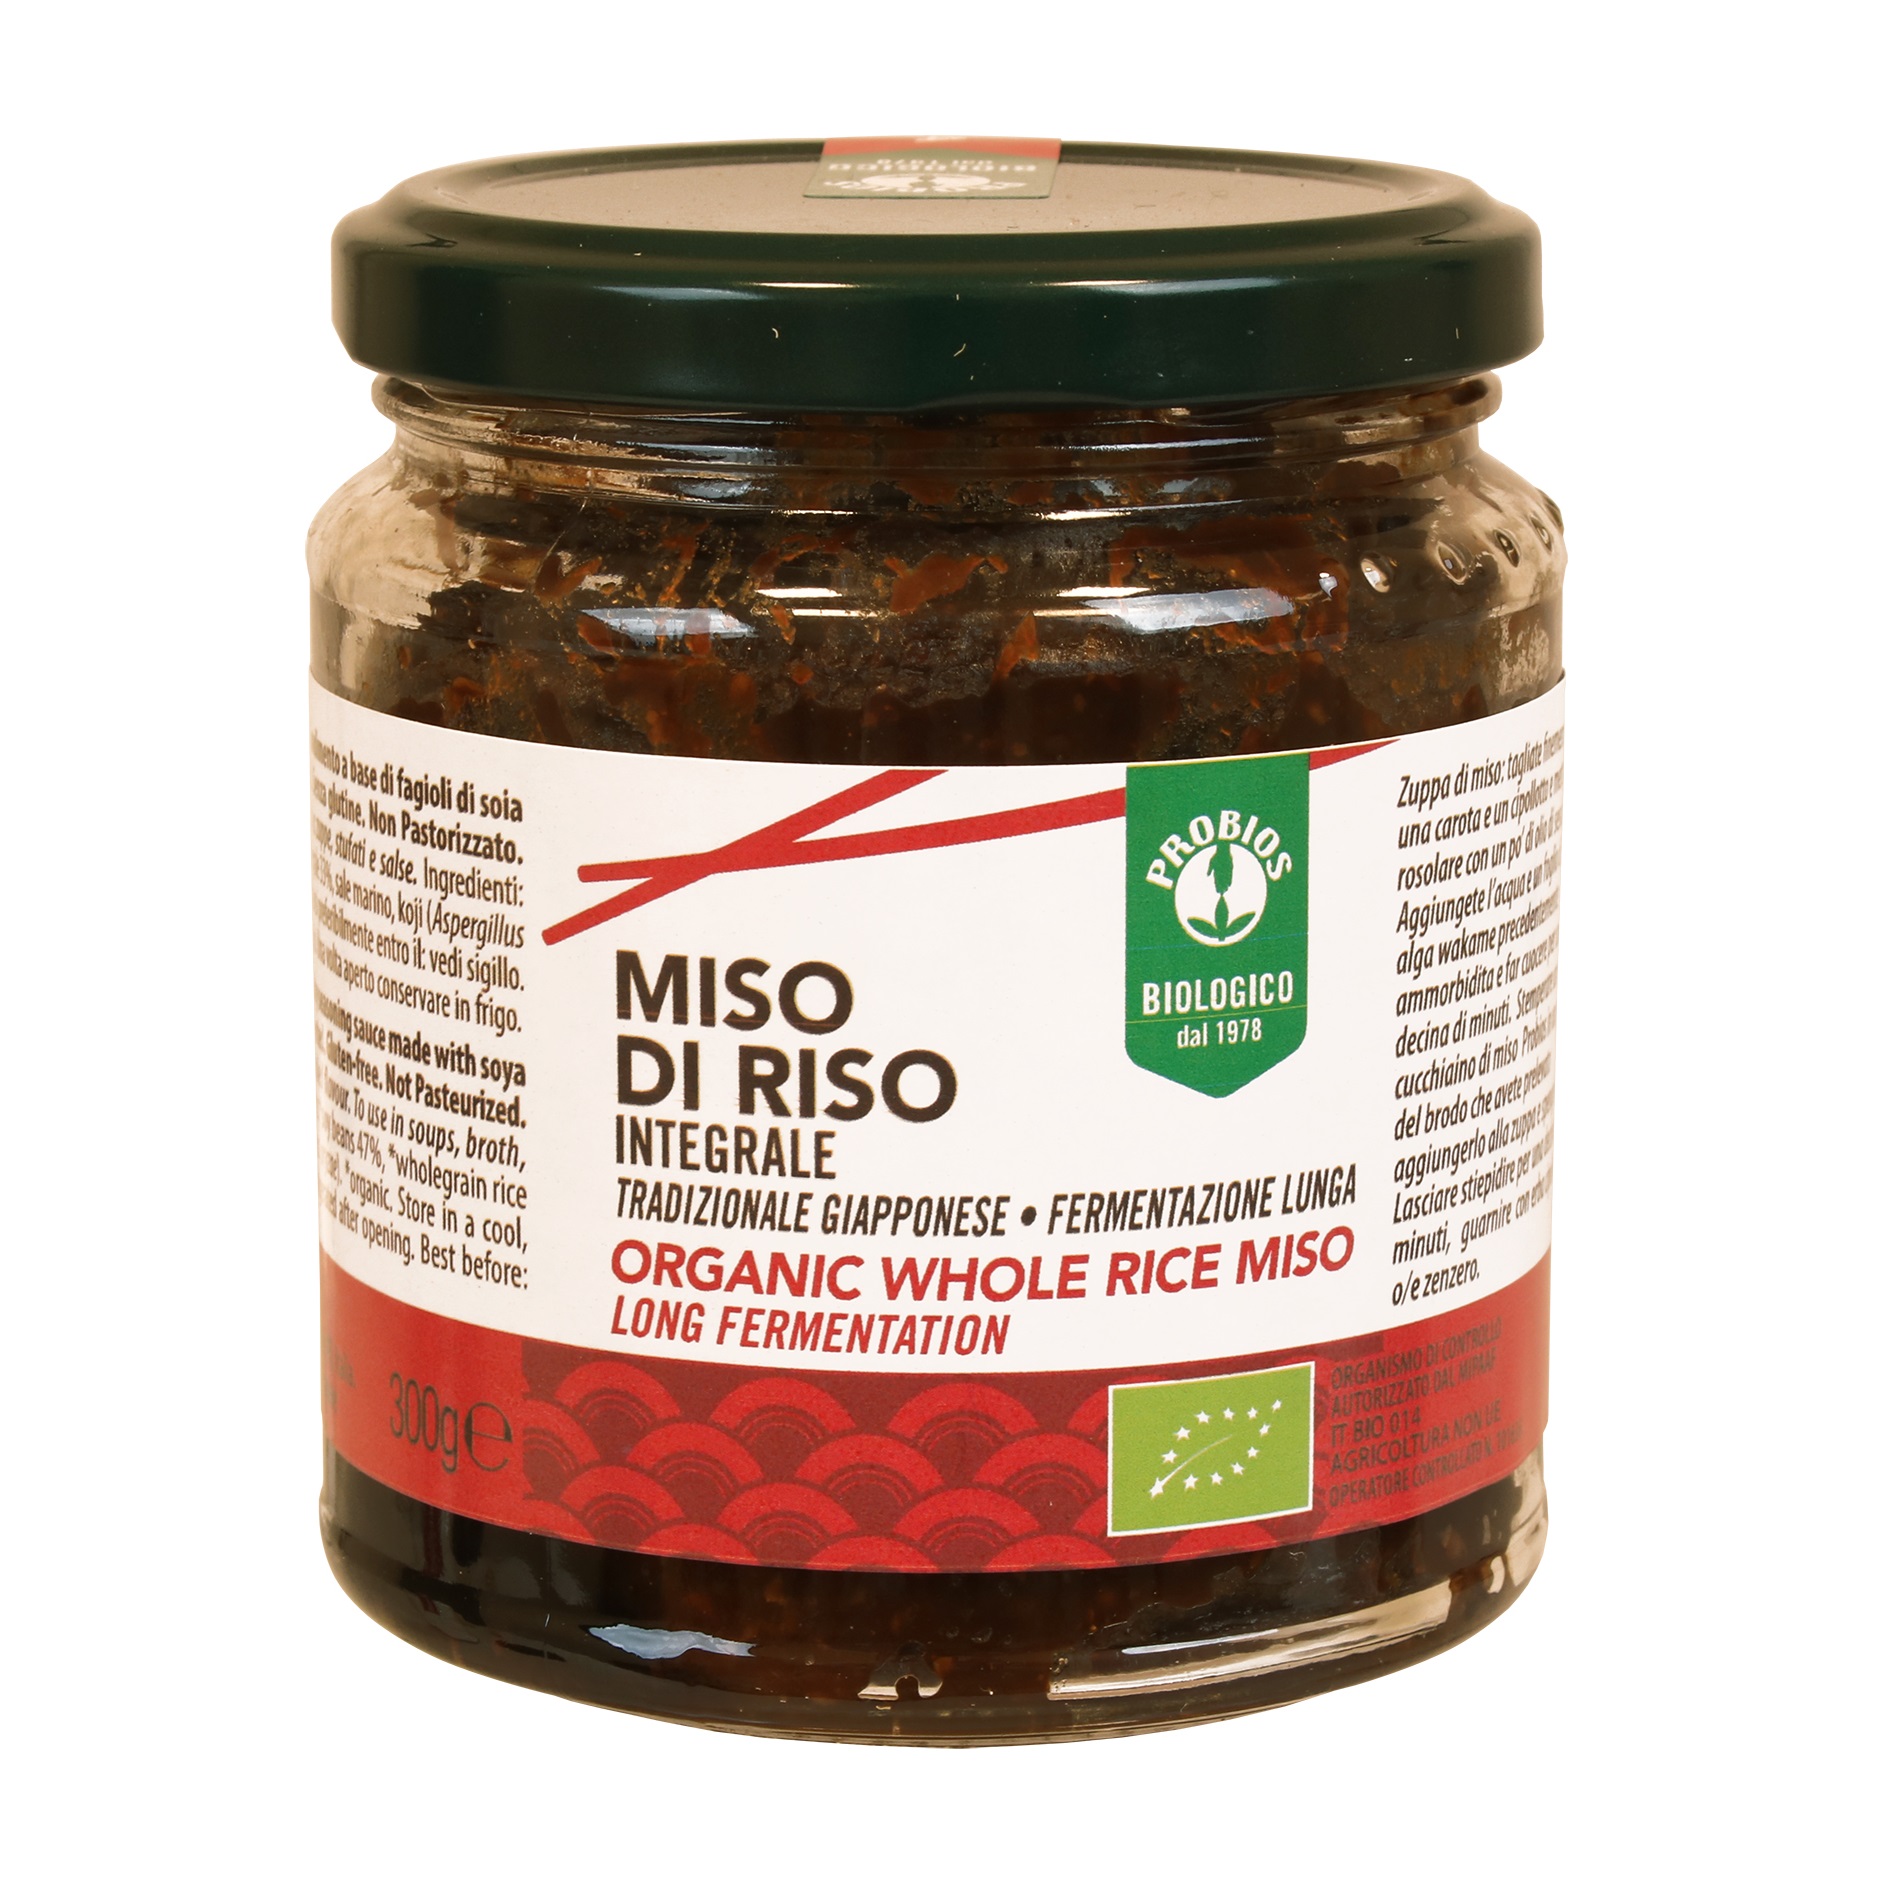 Tương Miso 300g ProBios Whole Rice Miso